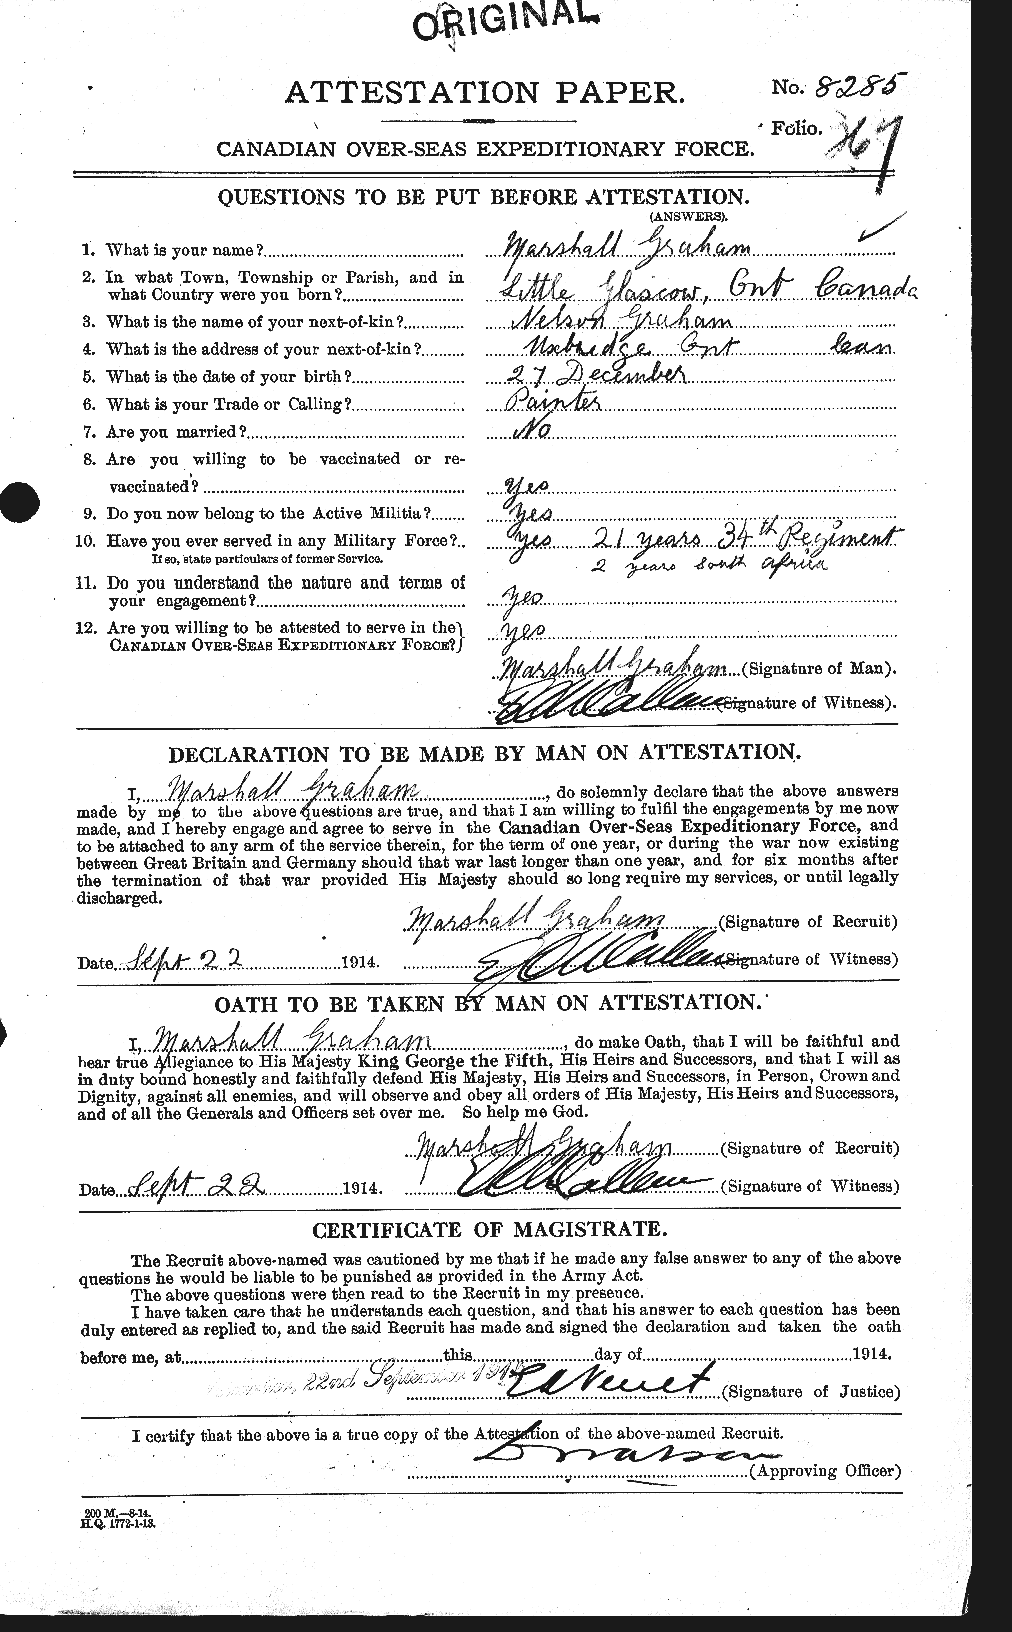 Dossiers du Personnel de la Première Guerre mondiale - CEC 359291a